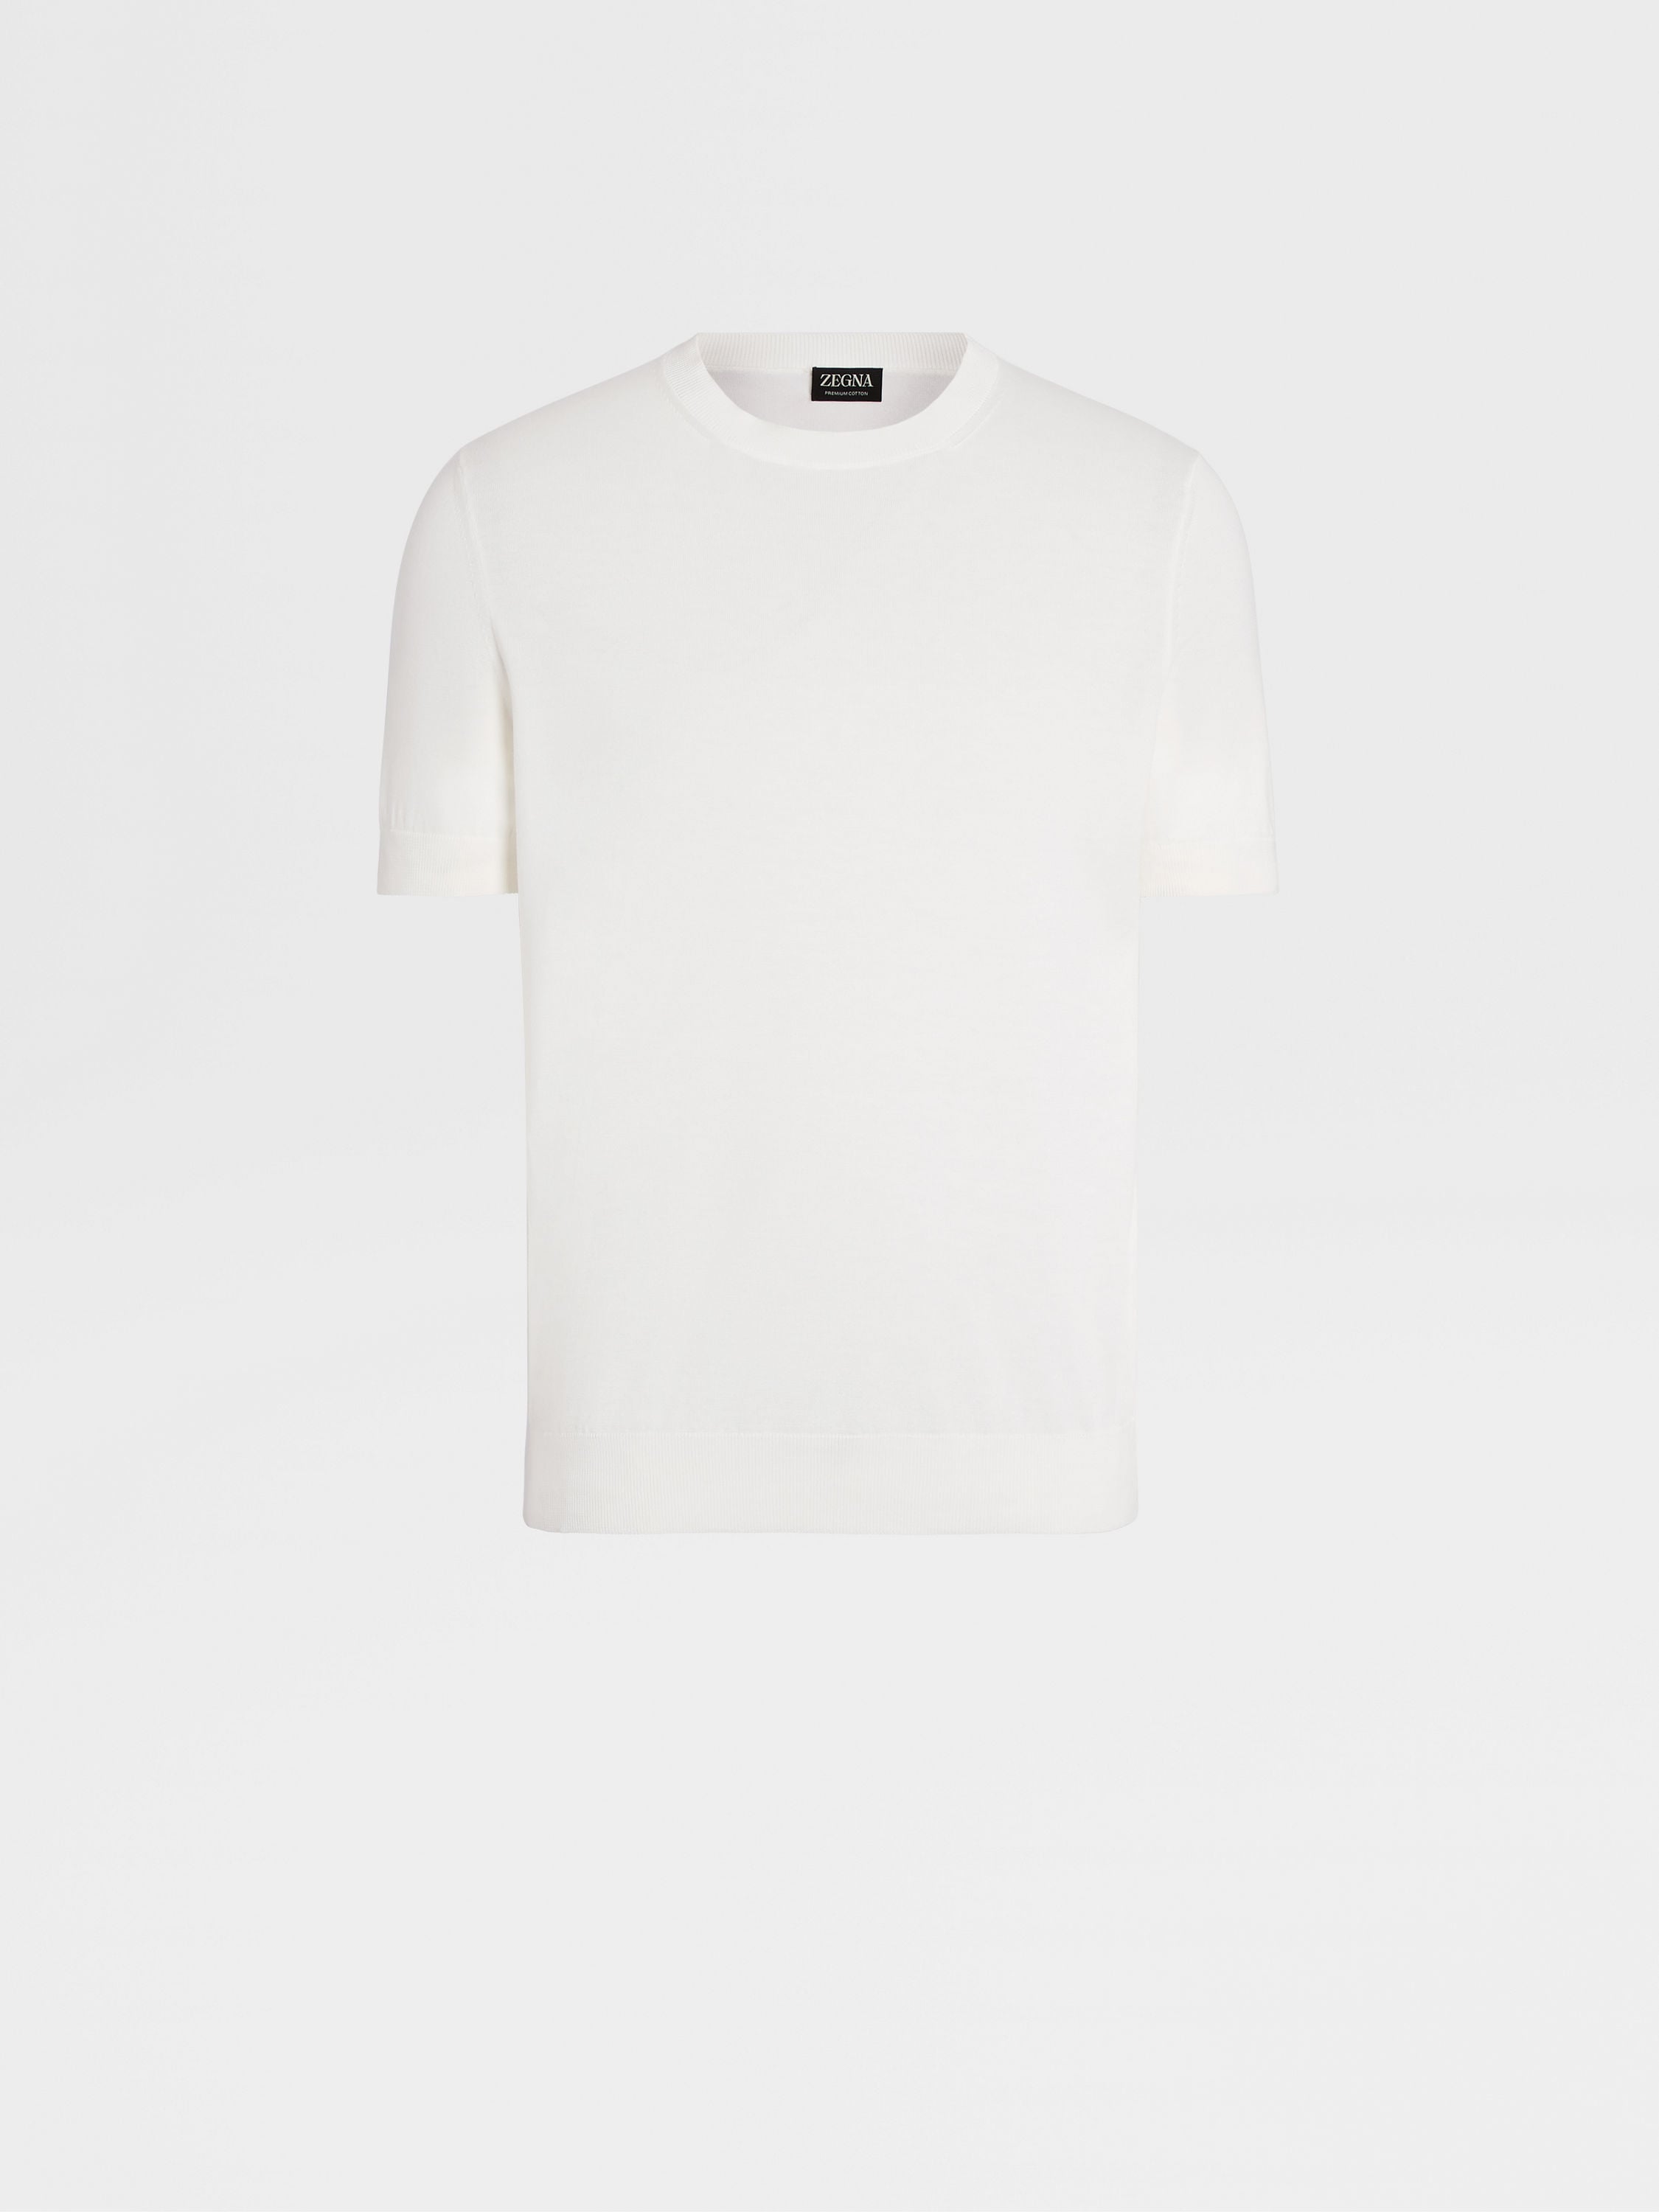 White Premium Cotton T-shirt